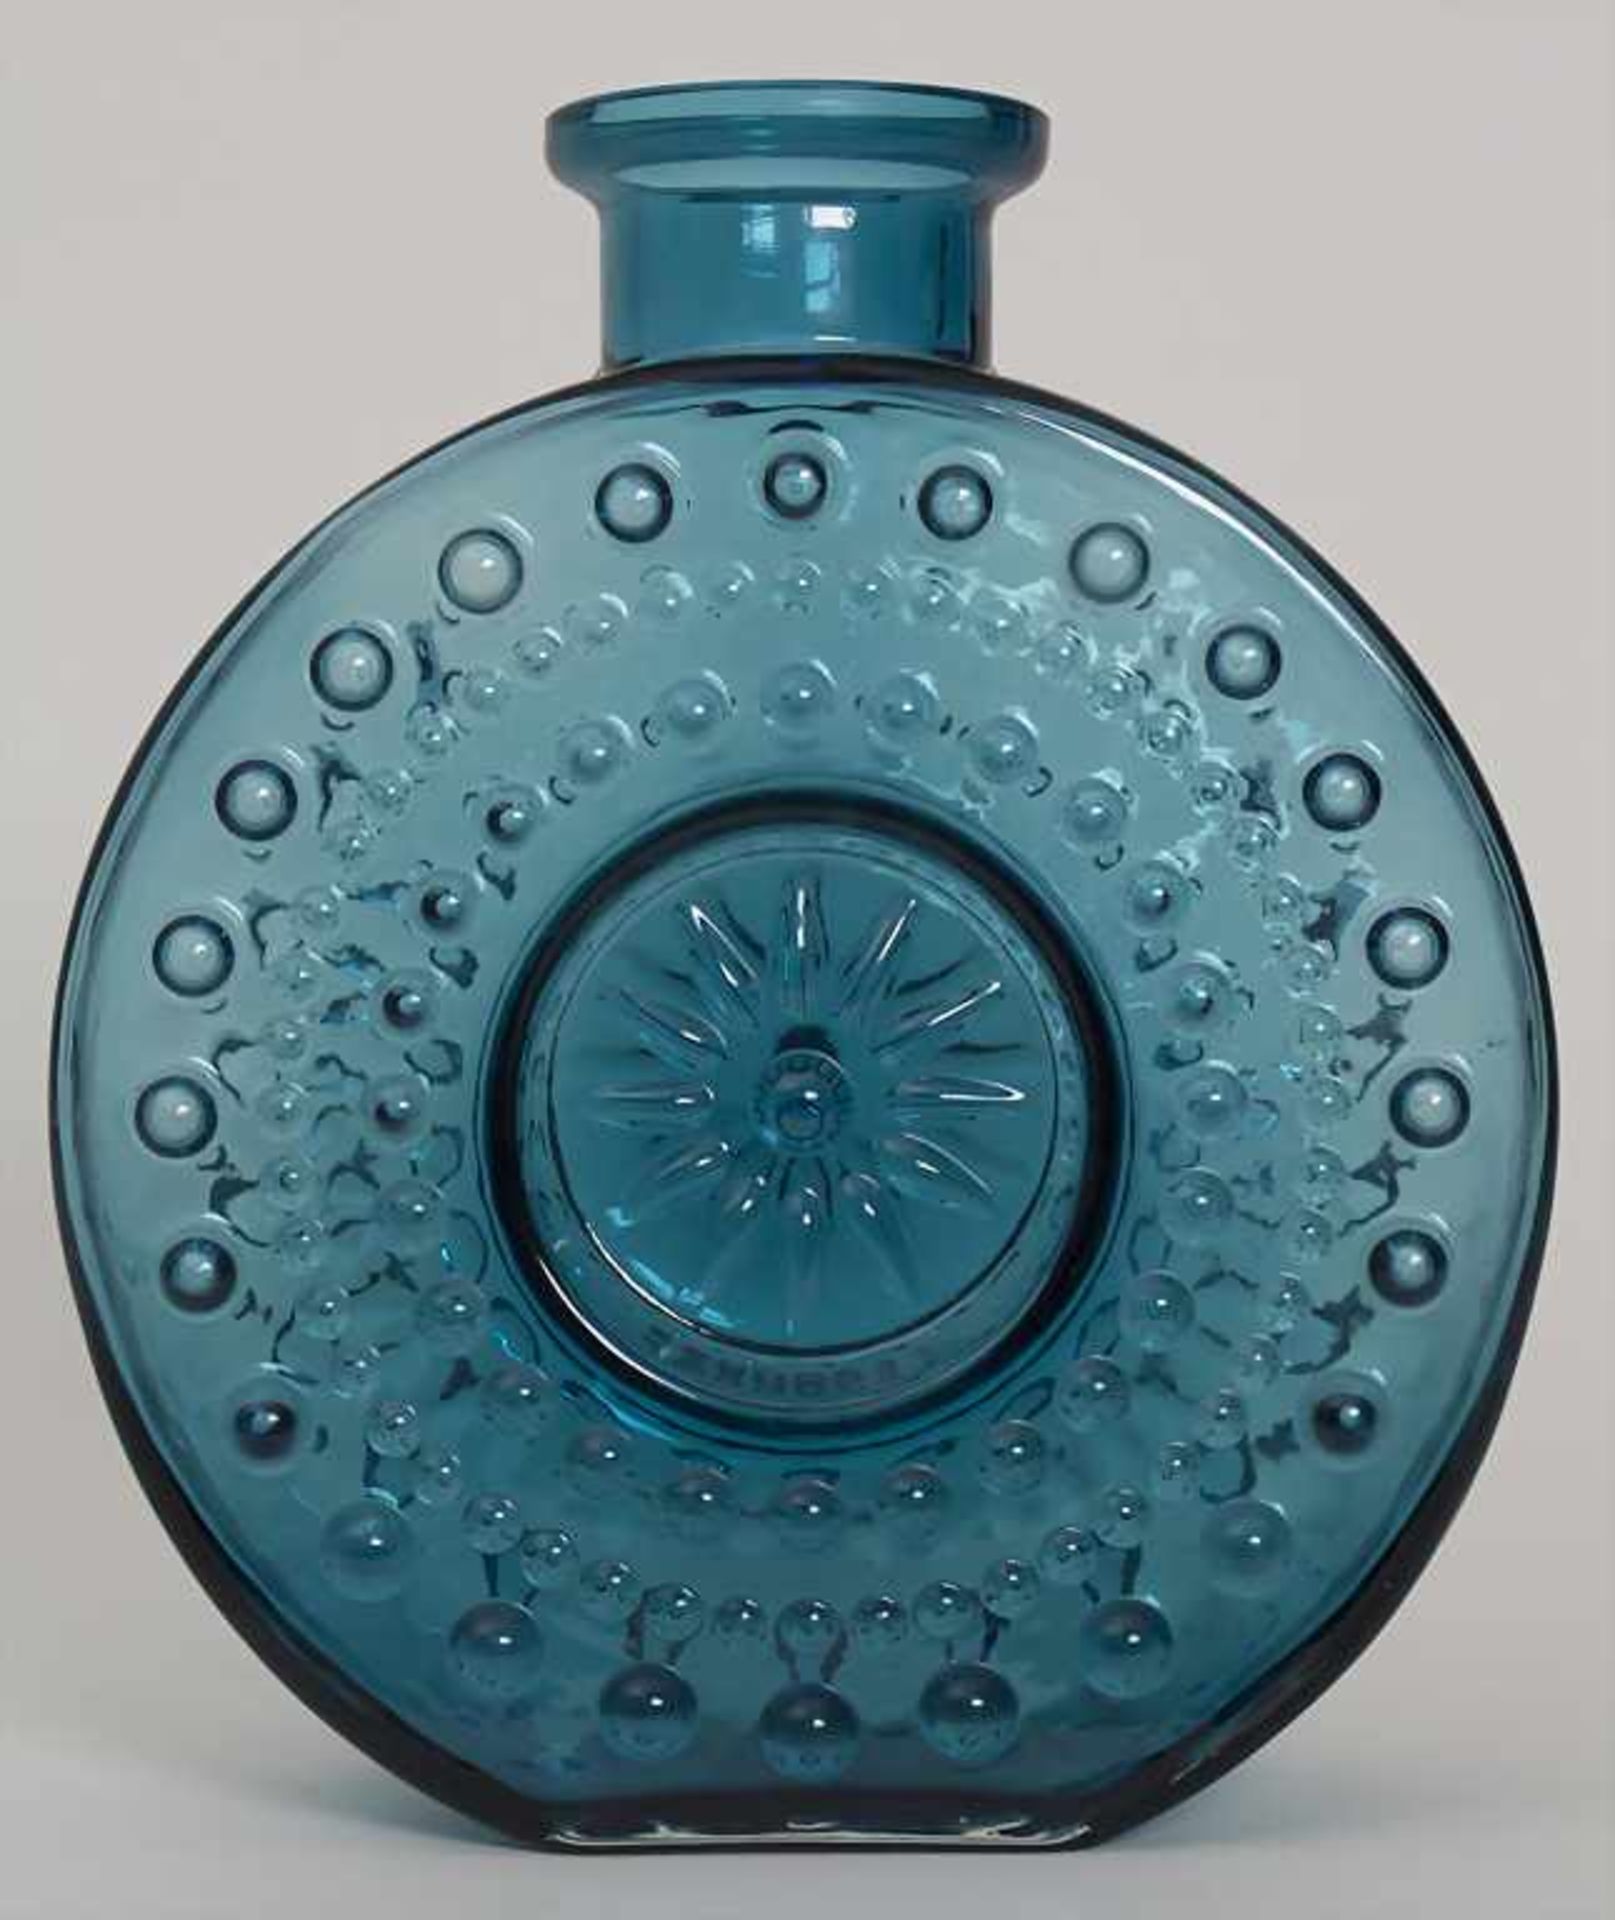 Designer-Vase, 70er JahreMaterial: türkisblaues Glas, in Form geblasen, Rand geschliffen,Höhe: 30